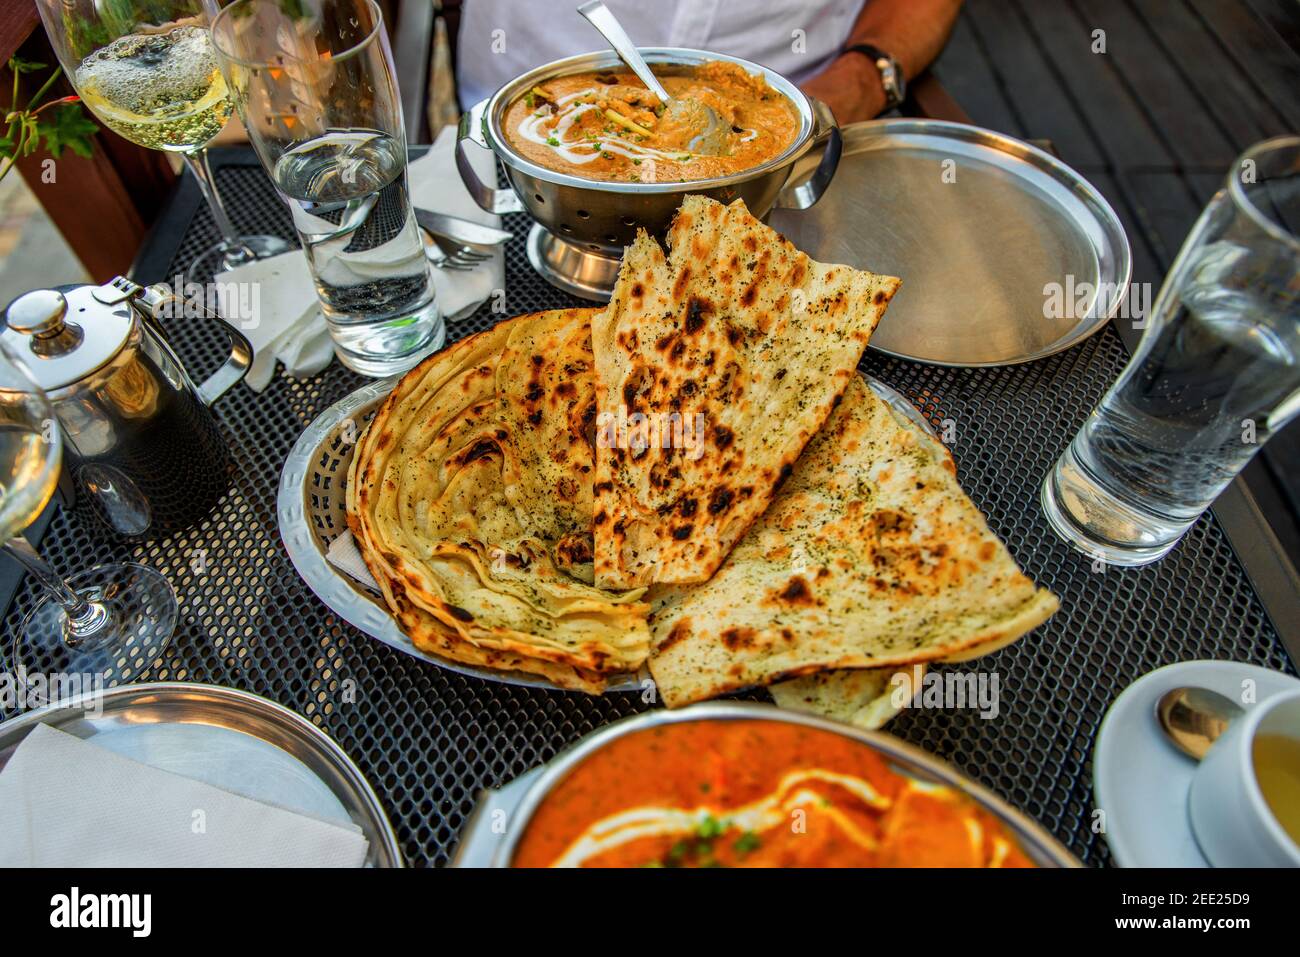 Tavola ricca di piatti indiani, pane (naan), bicchieri d'acqua, vino, caraffa con tè, ciotole e piatto. Ristorante indiano all'aperto. Foto Stock